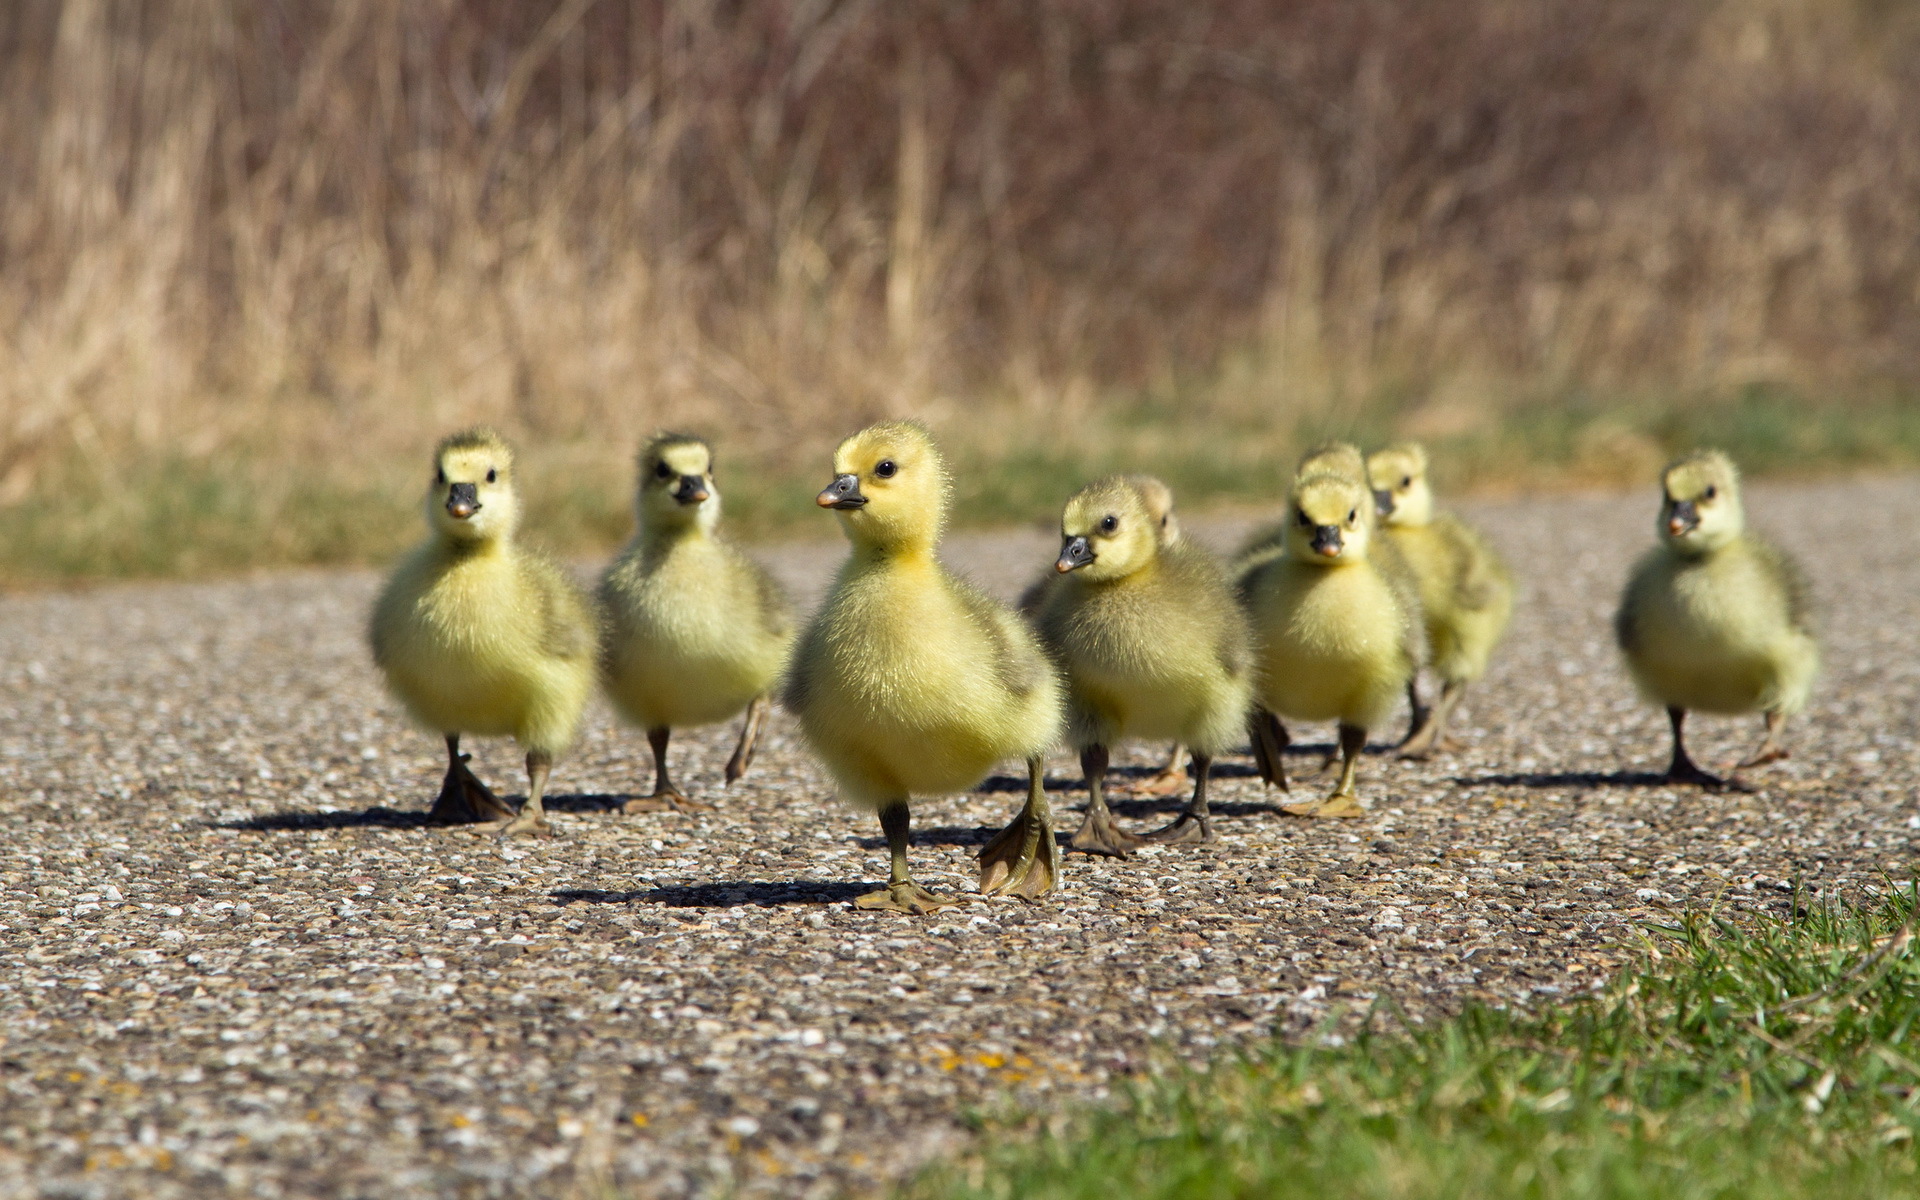 гусята бегут по дороге, домашние птицы, хозяйство, фото, Goslings run along the road, poultry, farm, photo